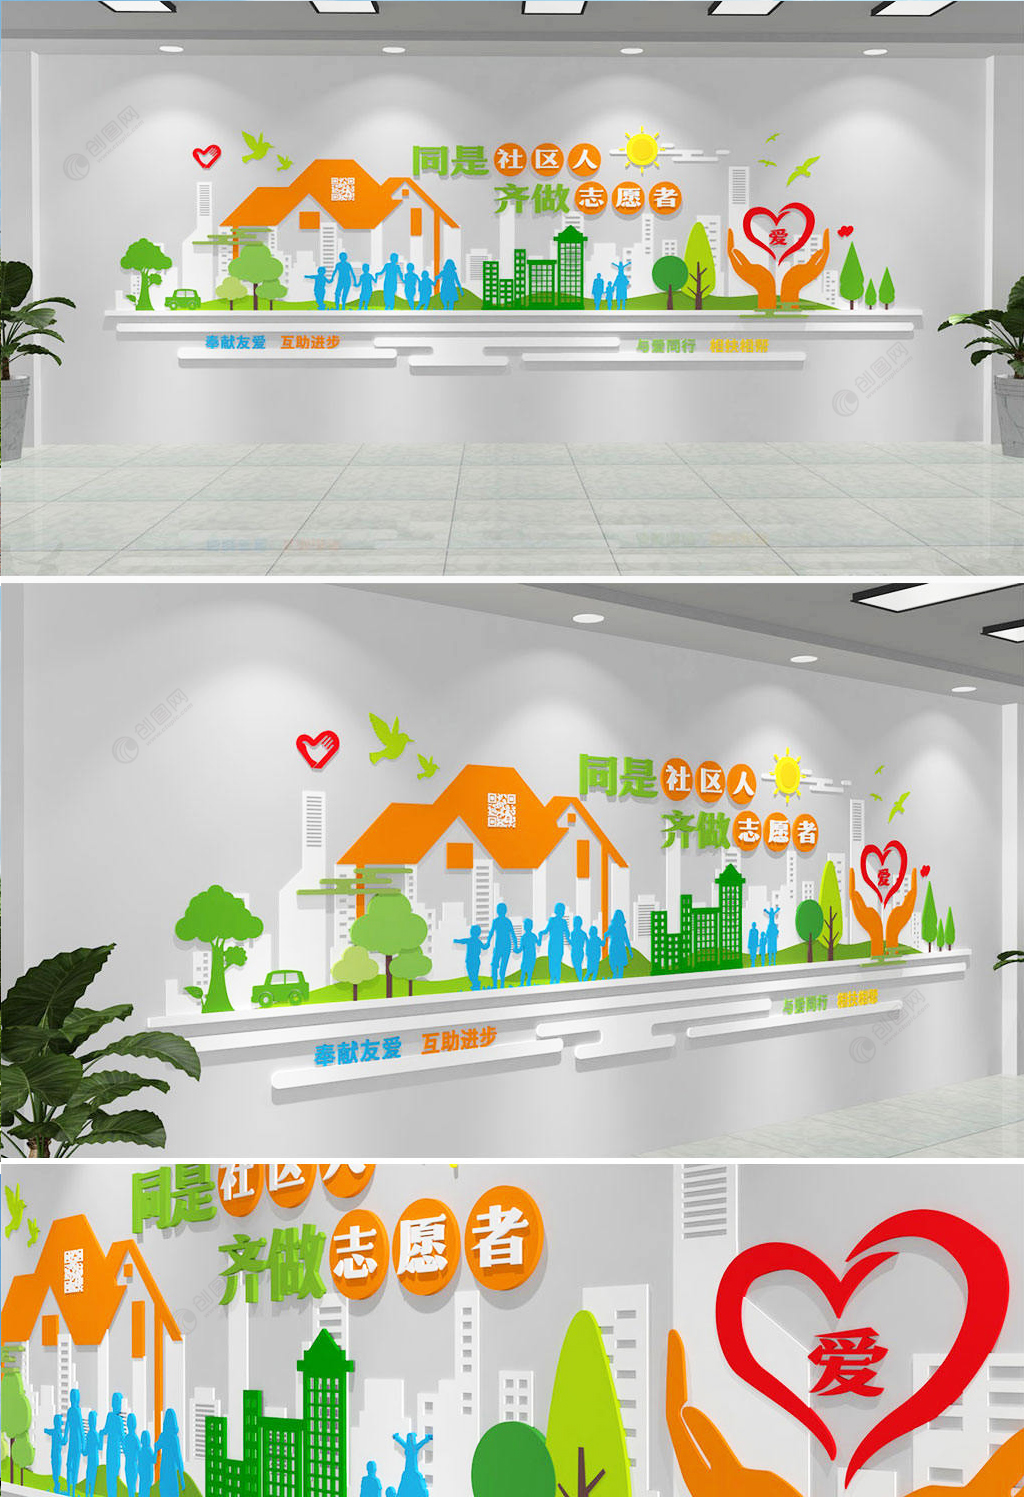 清新雅致志愿者服务标语文化墙设计